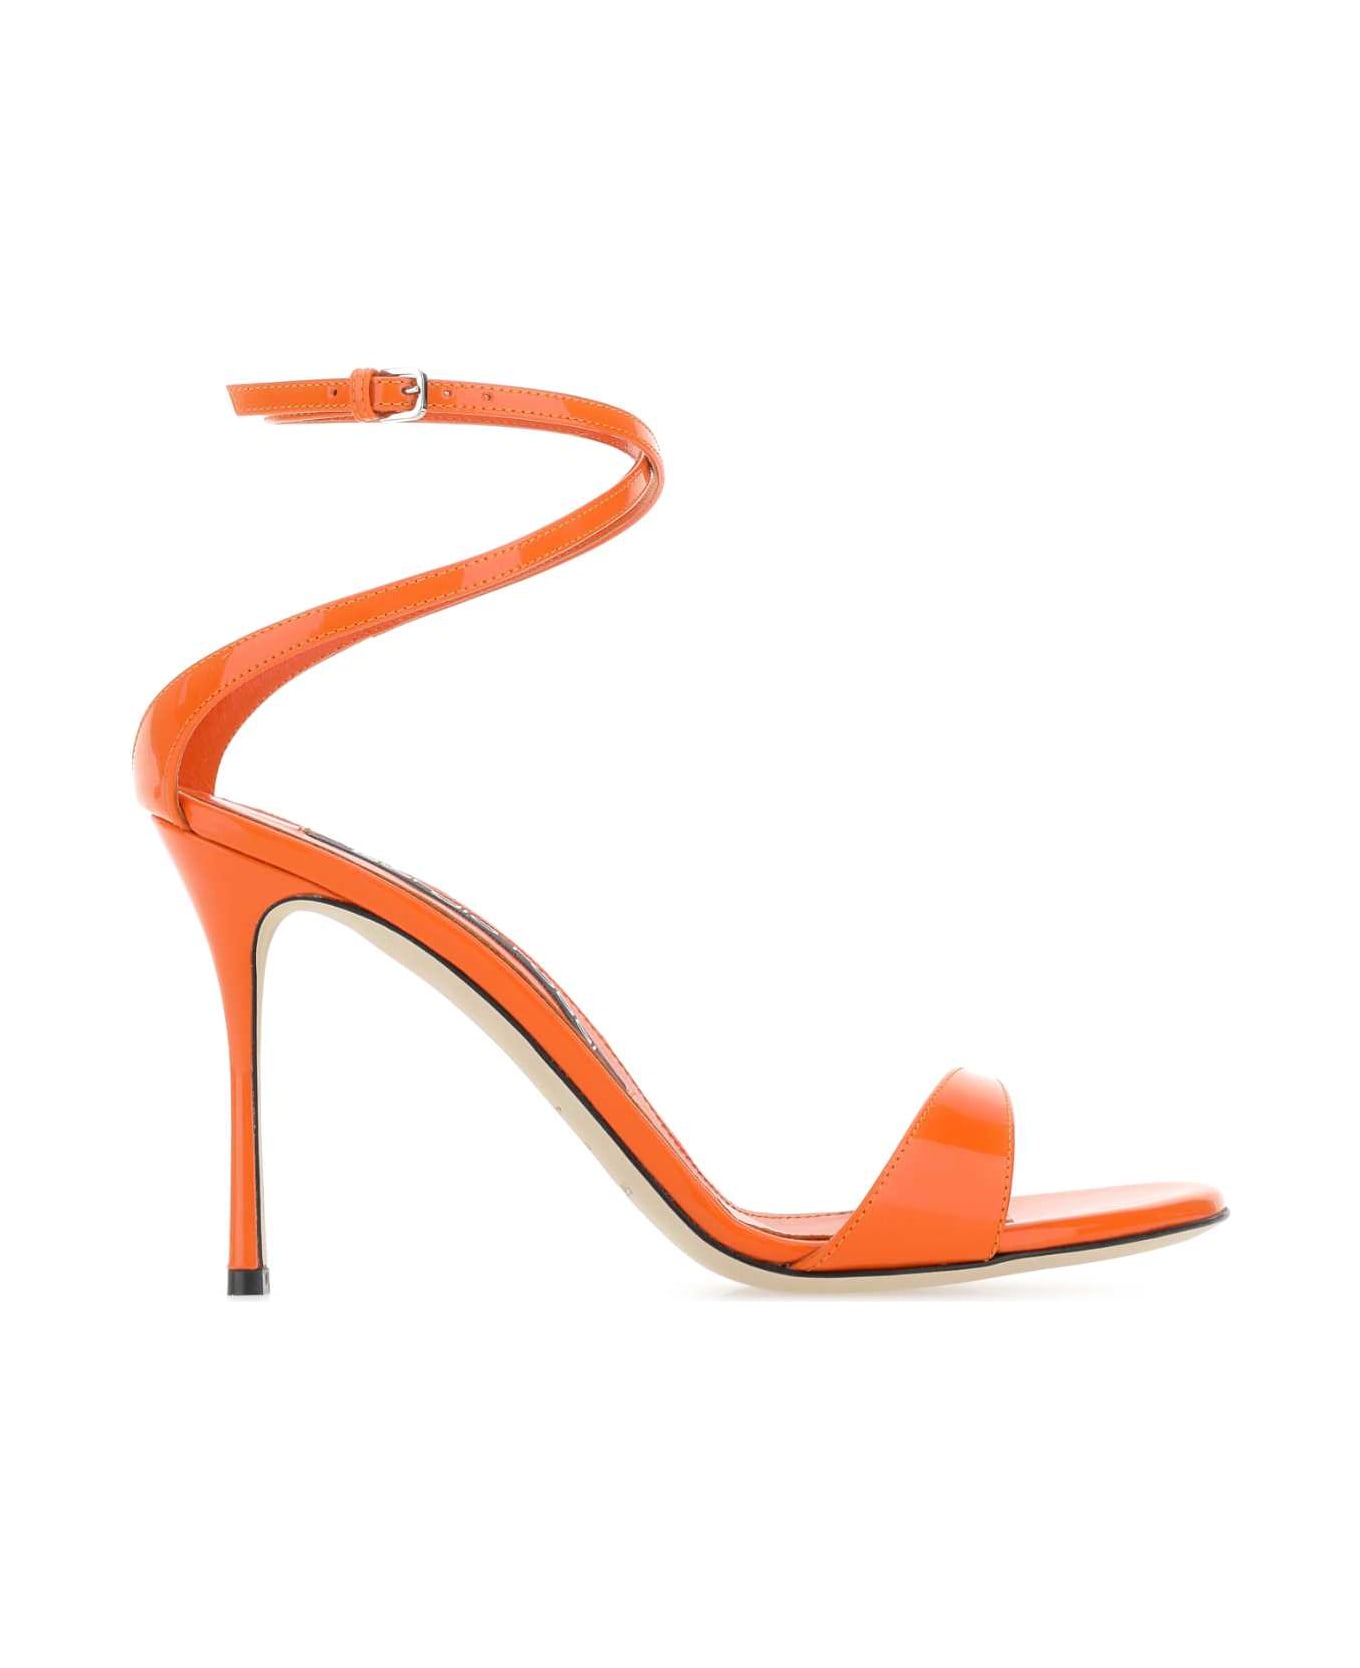 Sergio Rossi Orange Leather Godiva Sandals - Orange サンダル